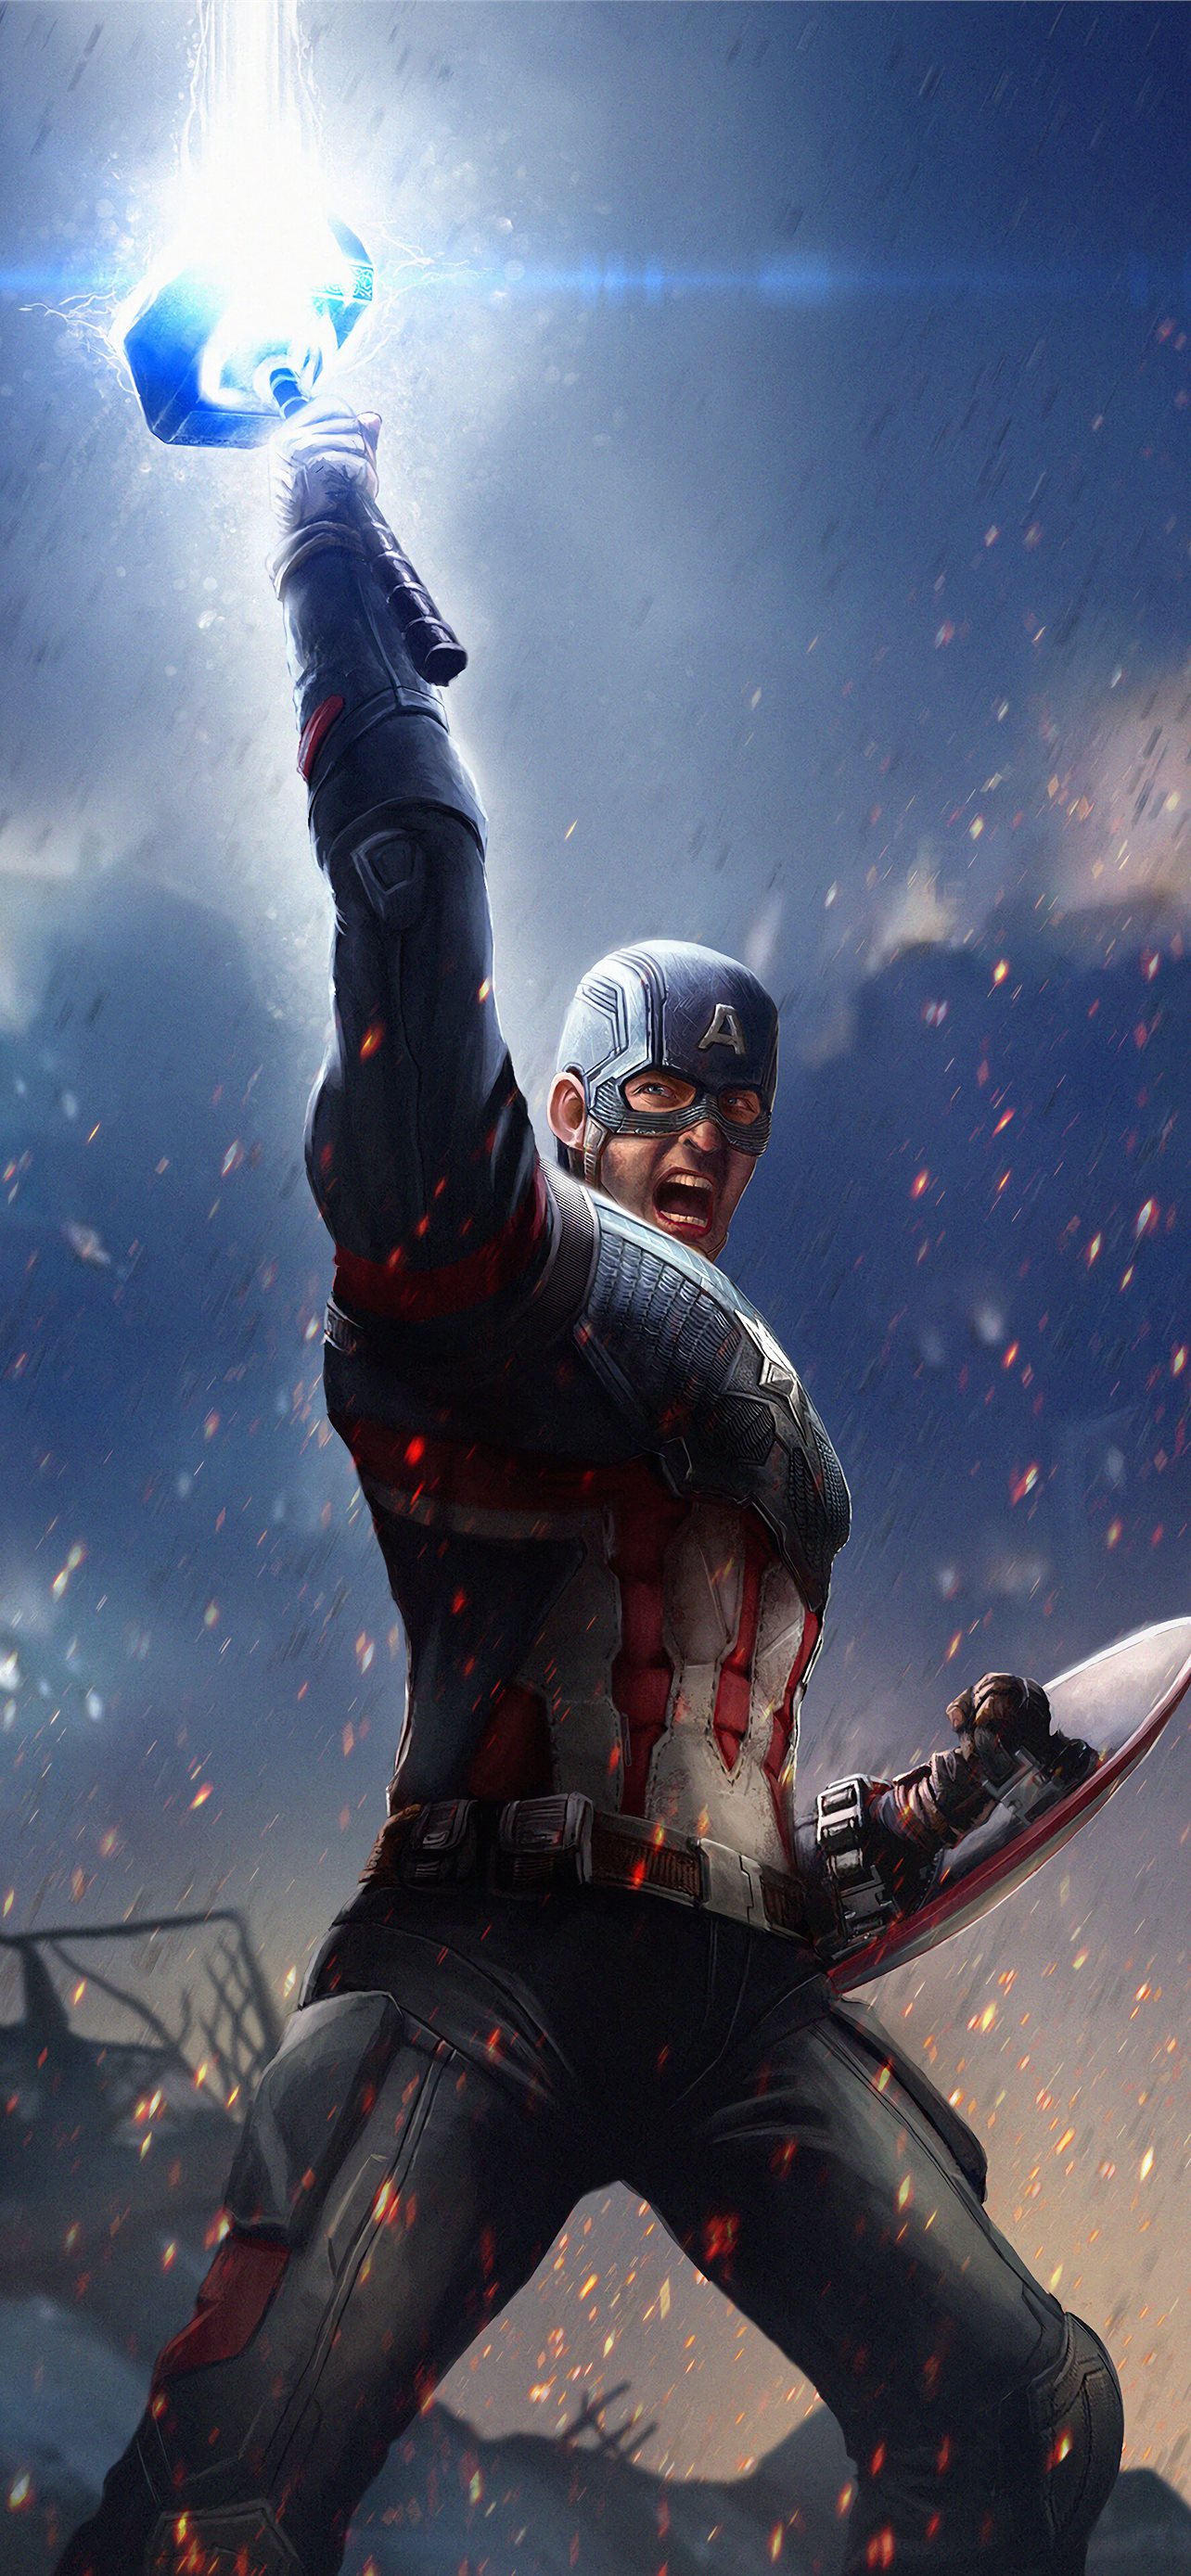 Captain America Mjolnir Avengers Endgame 4k 2019 Wallpaper 4K